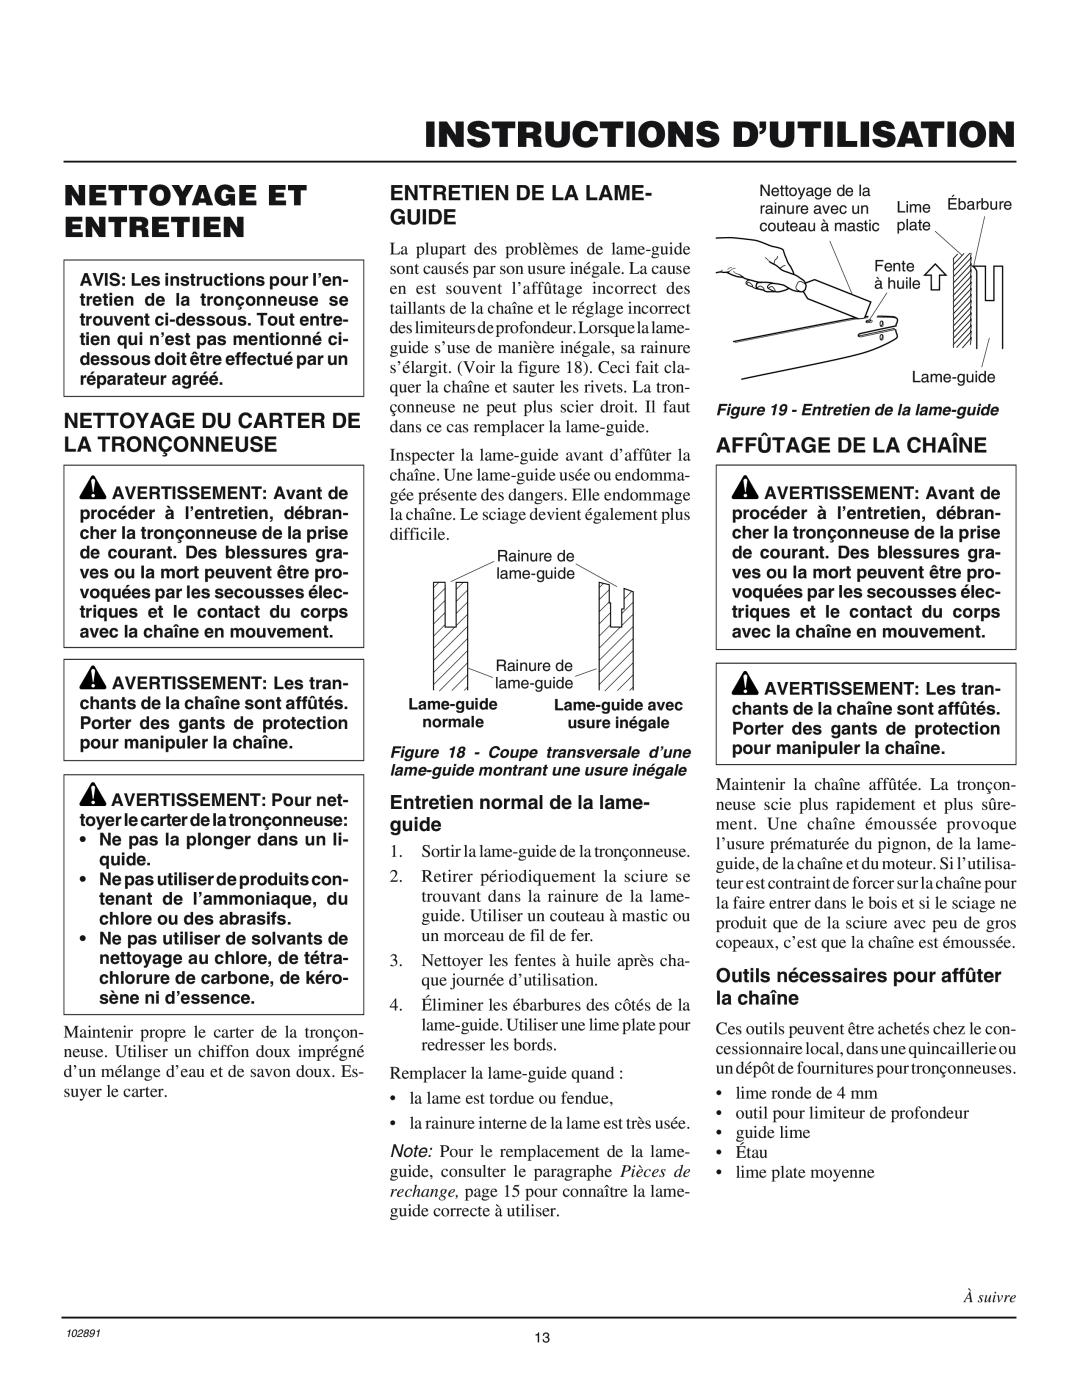 Desa 100271-01 owner manual Nettoyage Et Entretien, Nettoyage Du Carter De La Tronçonneuse, Entretien De La Lame- Guide 